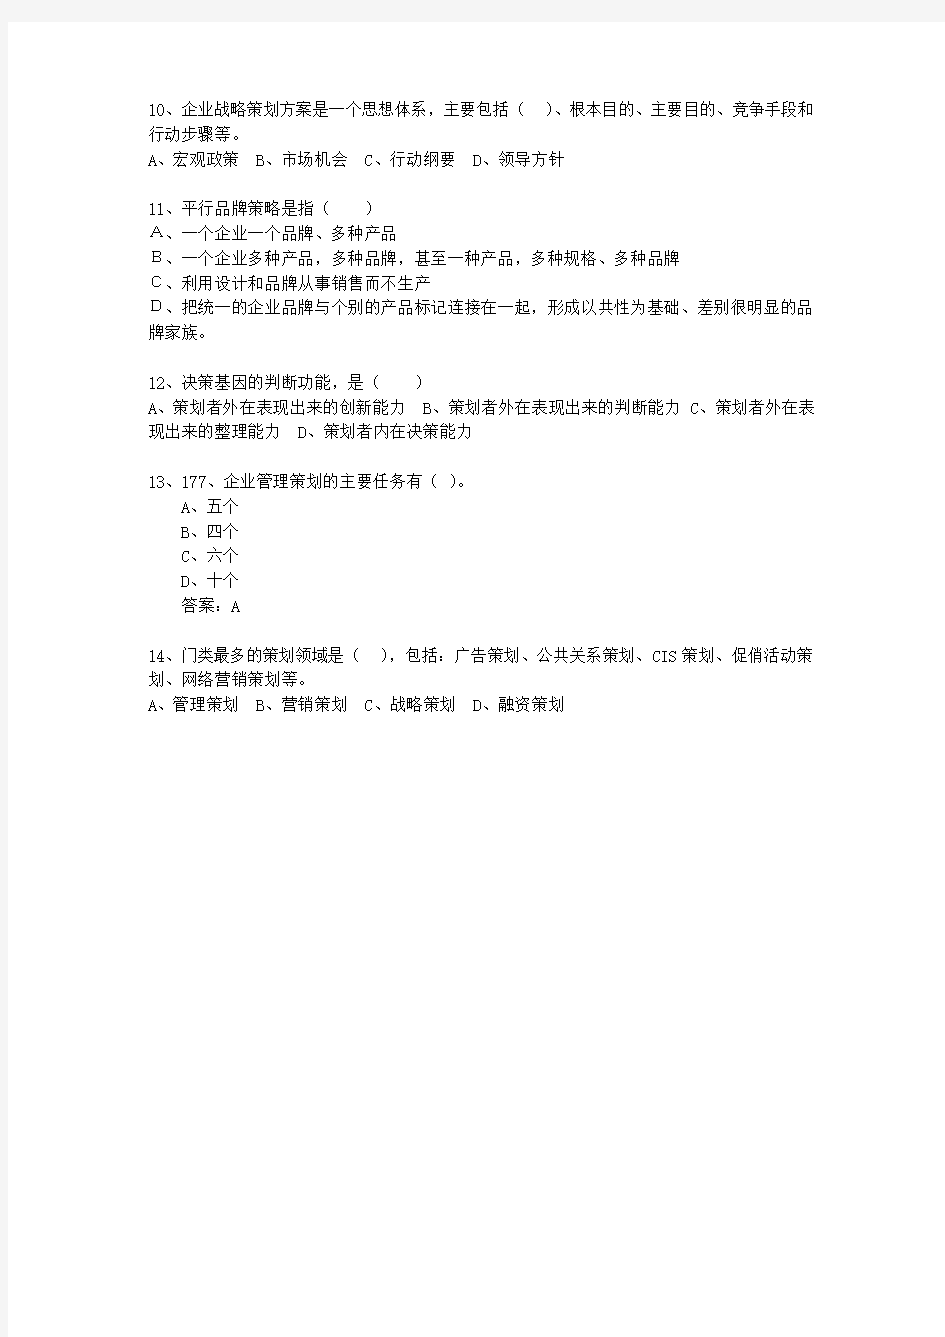 2010年四川省市场营销策划师(中级)考试题库